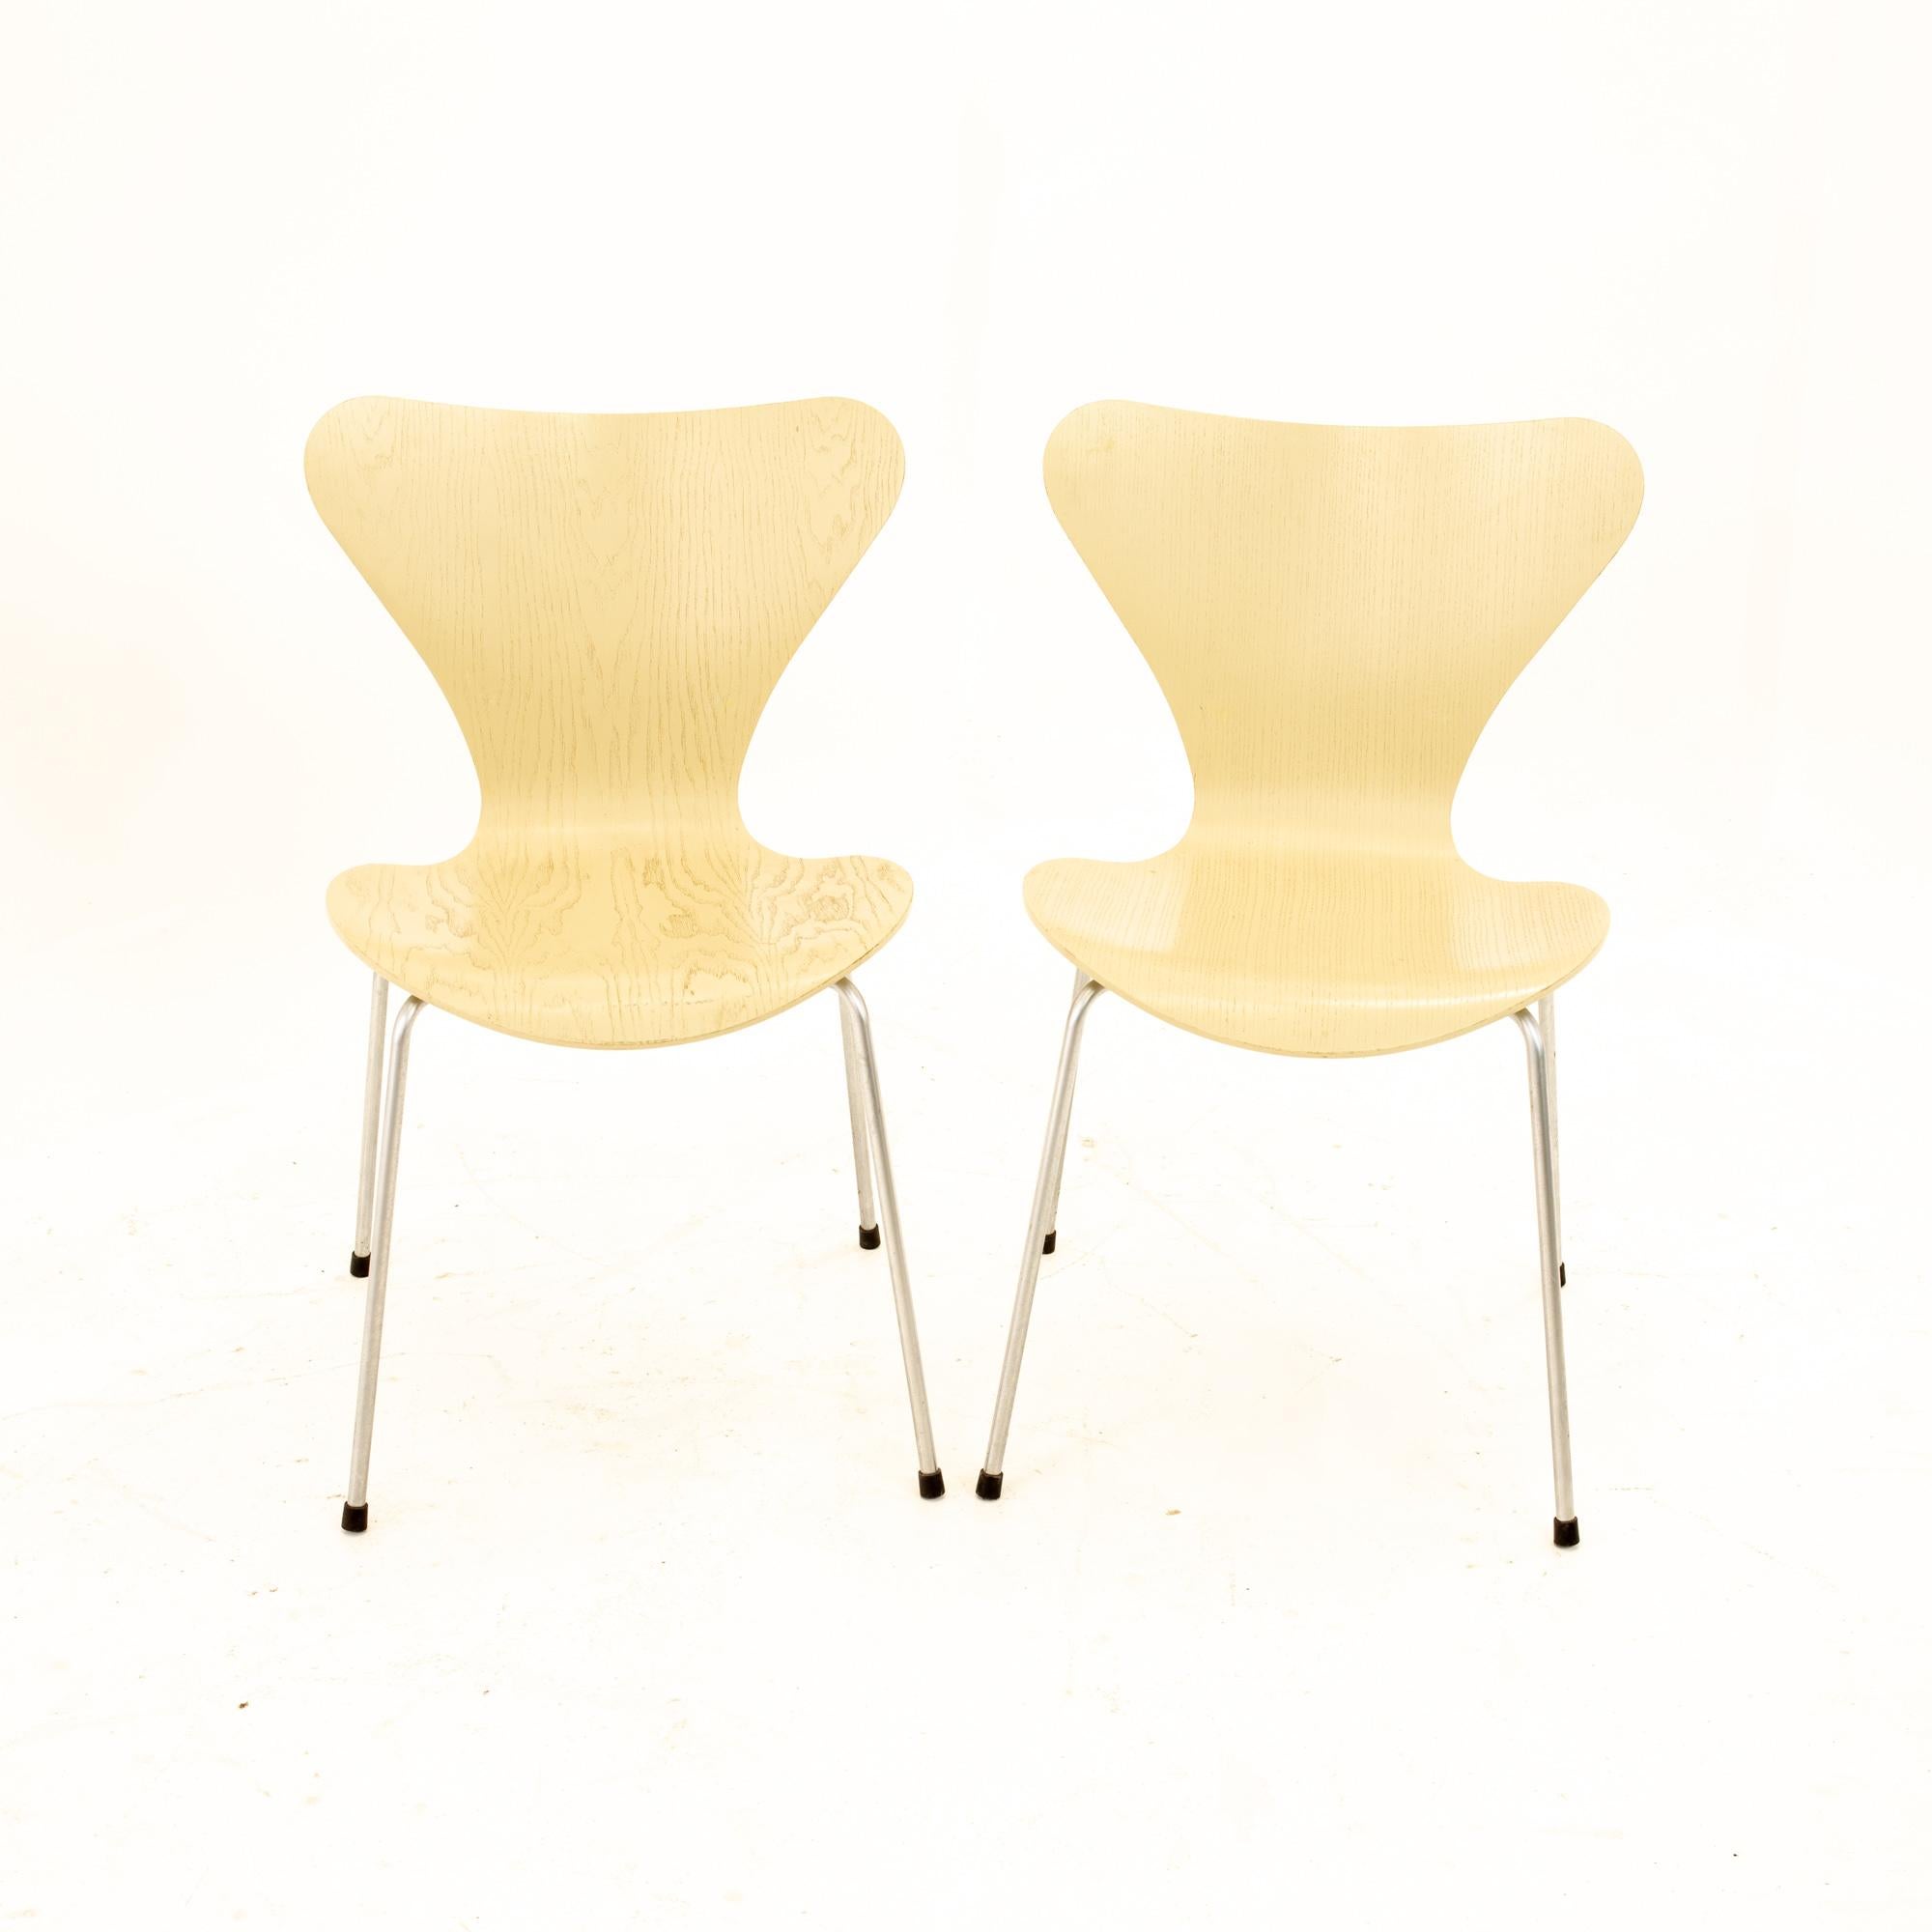 Arne Jacobsen for Fritz Hansen Mid-Century Modern Series 7 chair - Set of 2
Chaque chaise mesure : 19,5 de large x 19,25 de profond x 31 de haut avec une hauteur d'assise de 17,75 pouces.

Tous les meubles peuvent être achetés dans ce que nous